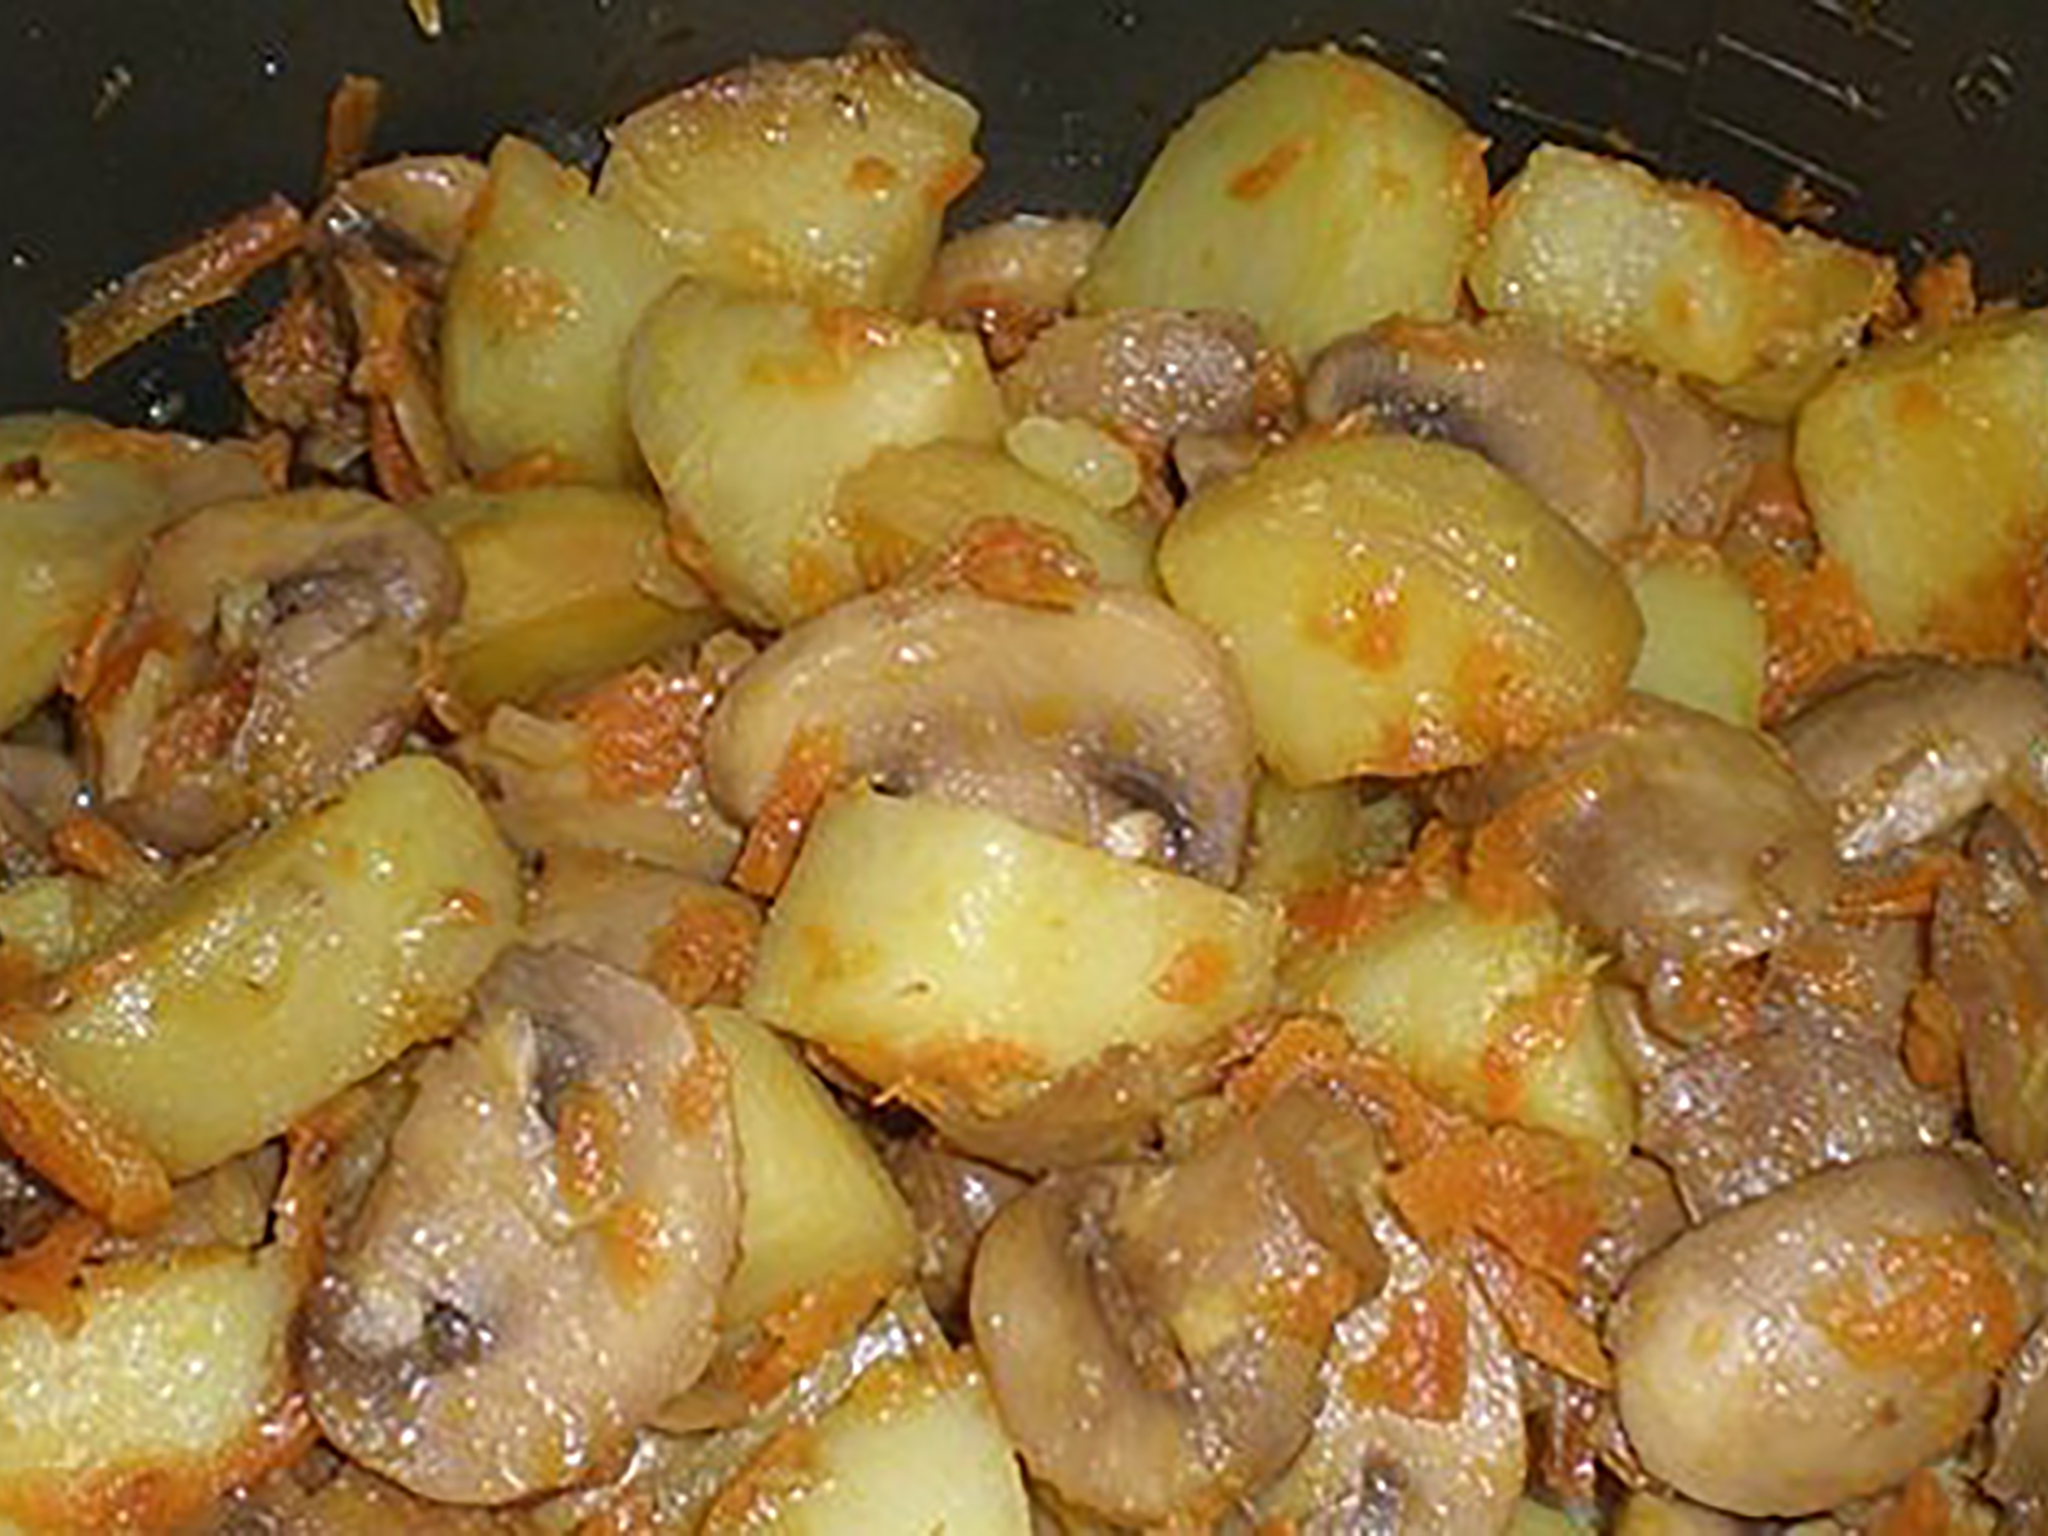 Тушеная картошка с мясом в мультиварке — 5 пошаговых рецептов